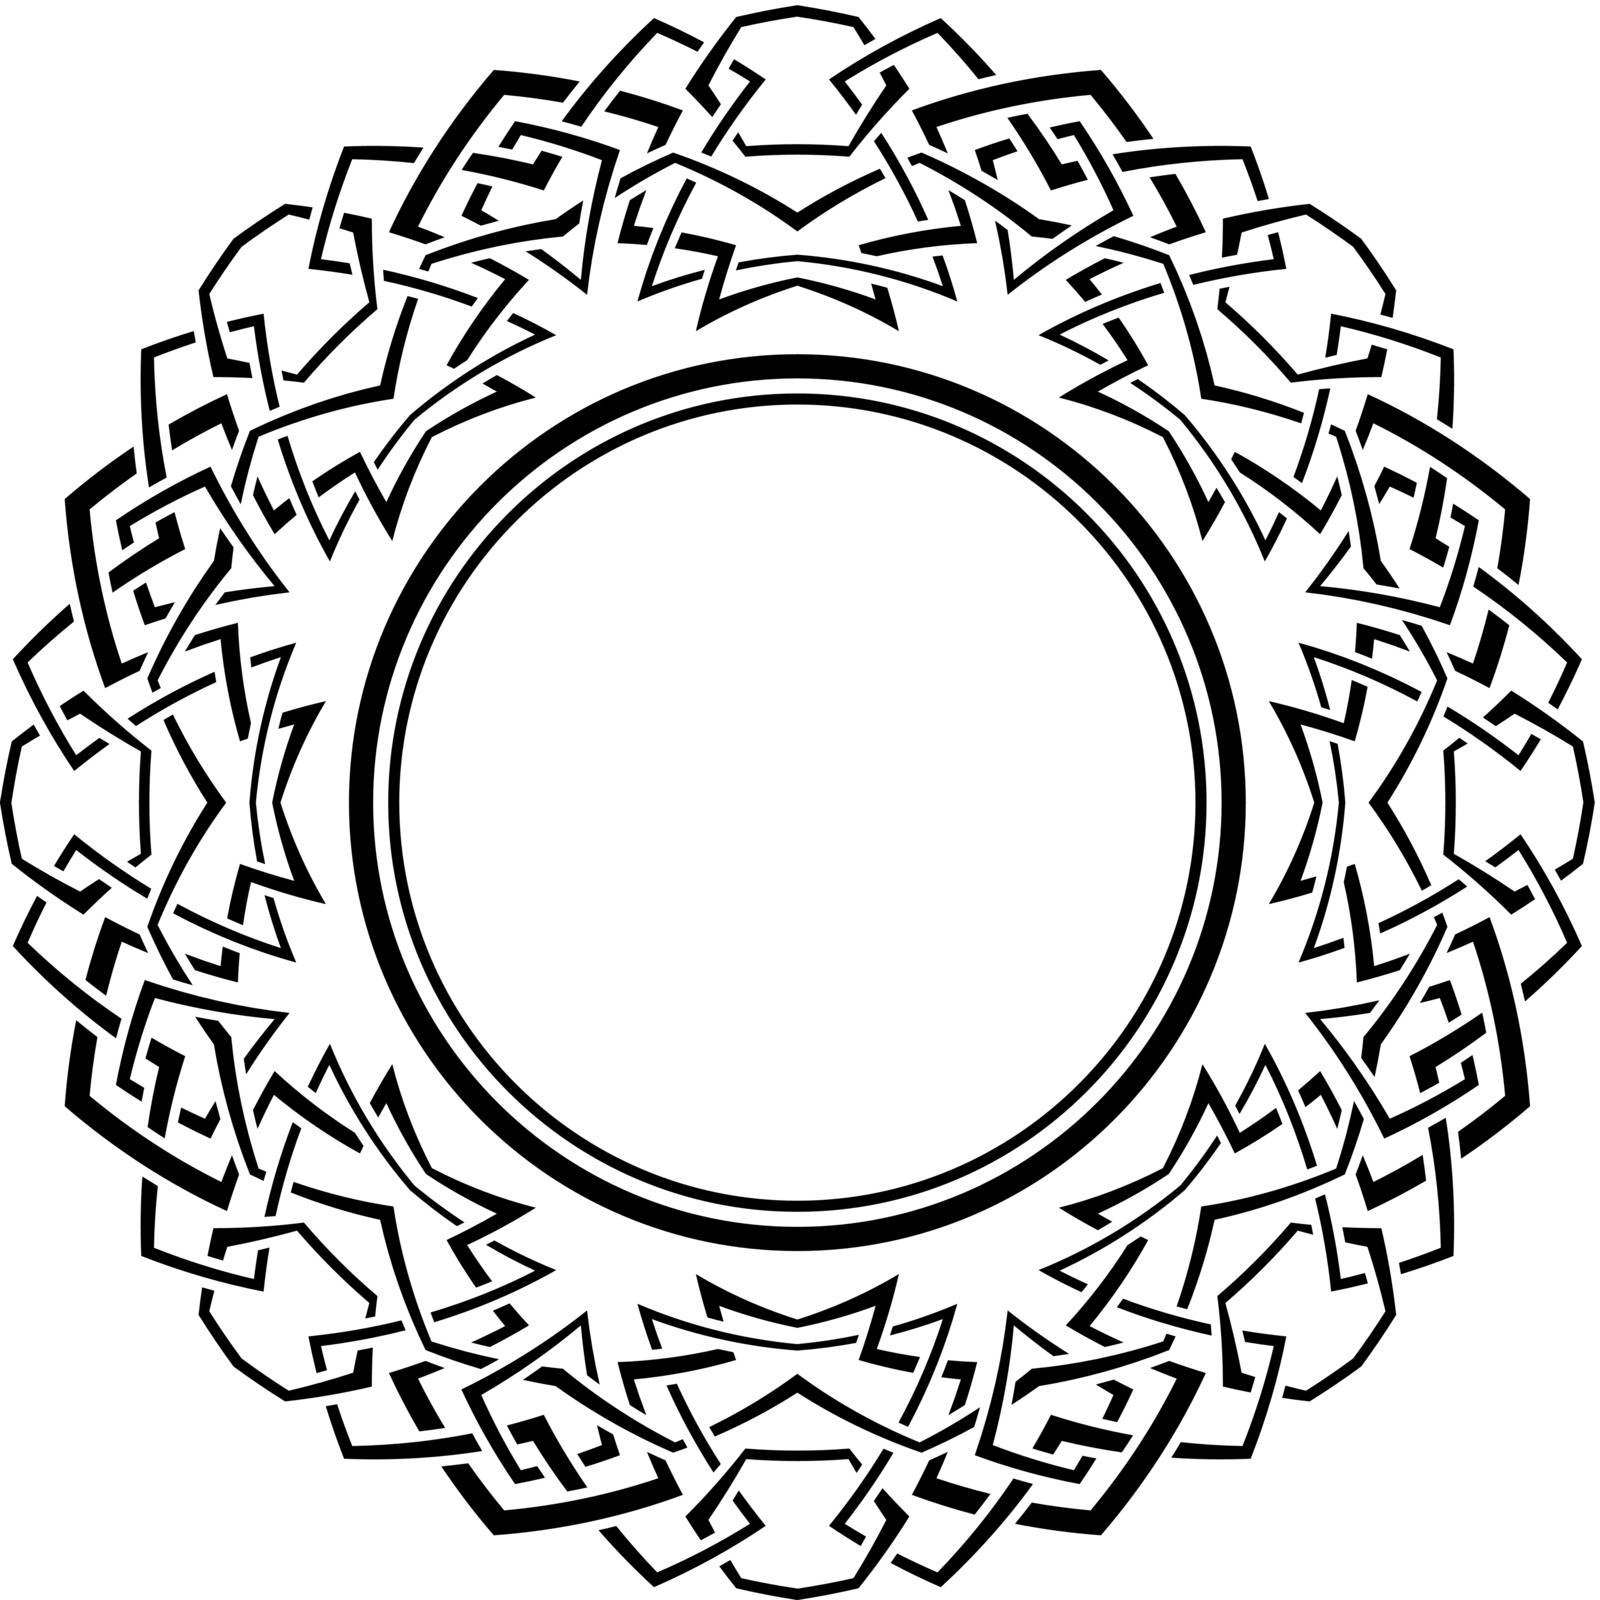 Black frame with ornamental border on white